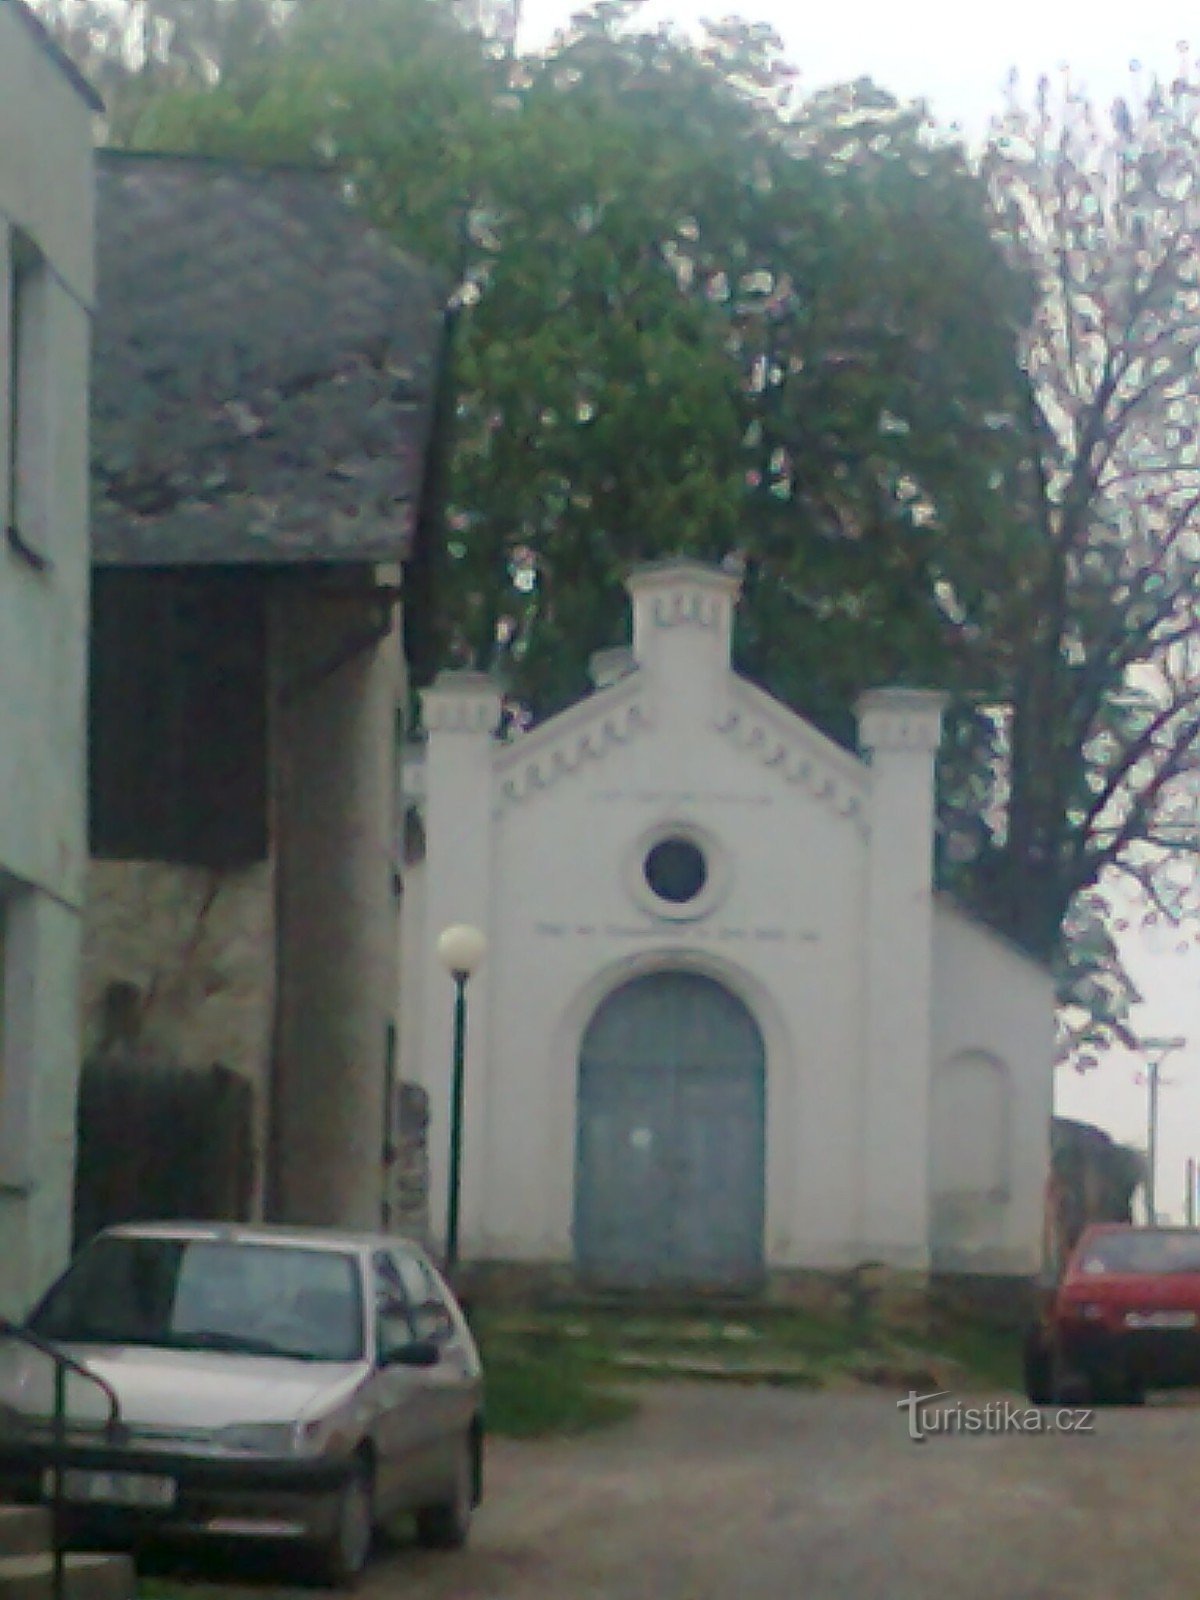 ảnh chụp từ cửa trước của một giáo đường Do Thái